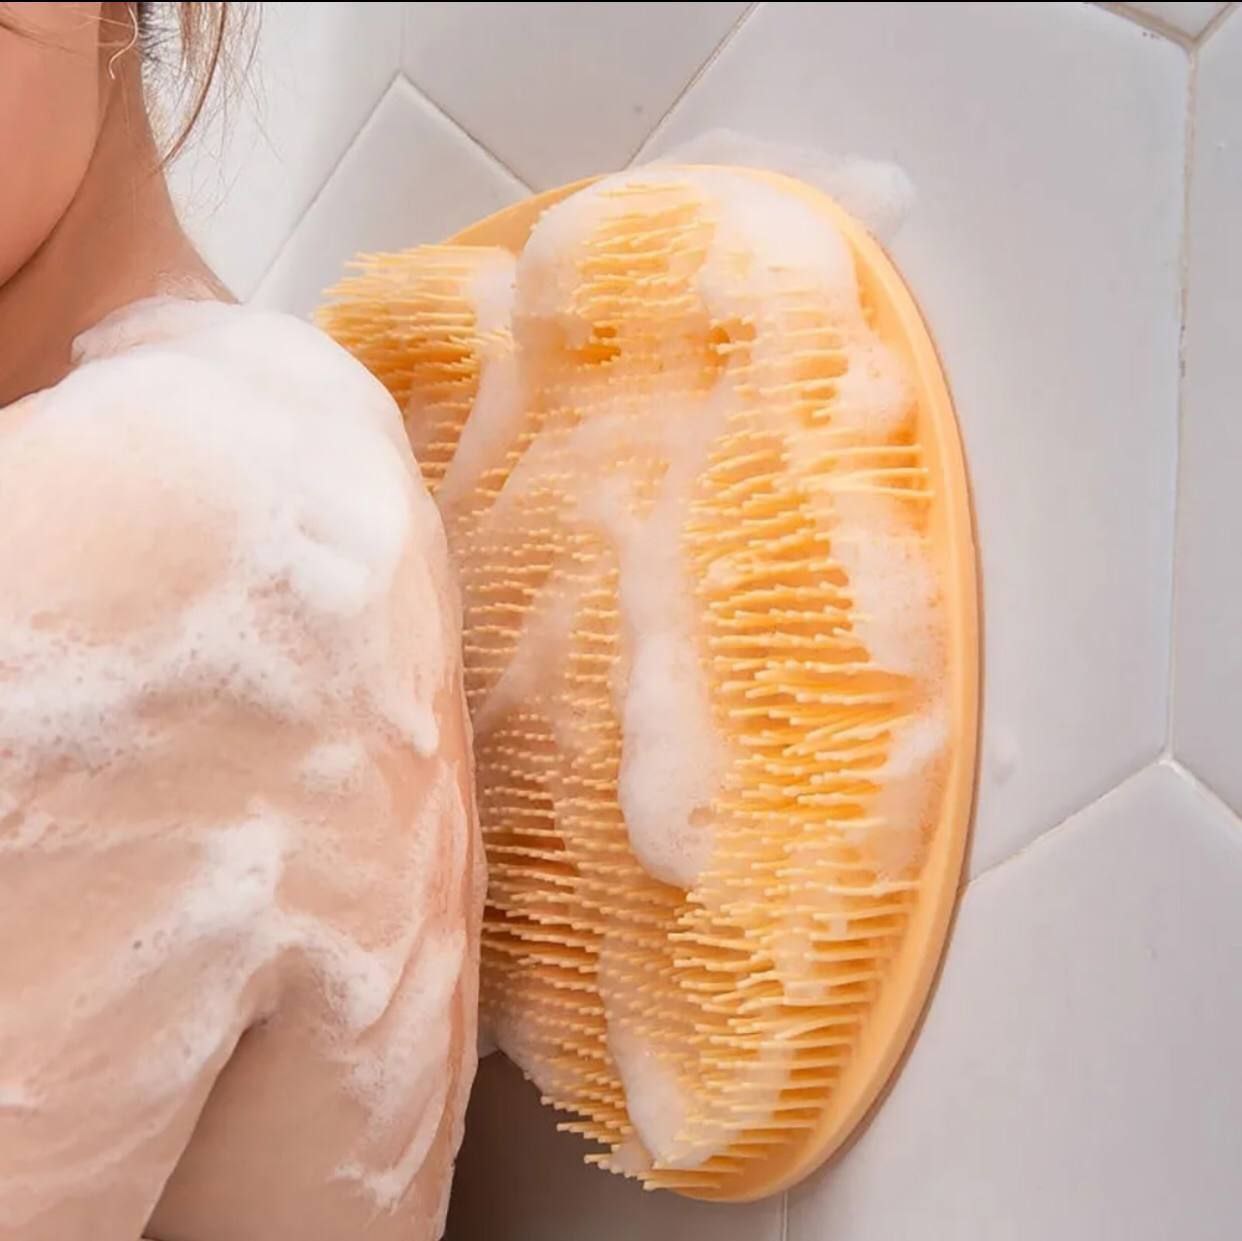   خرید لوازه خانه - لیف حمام سیلیکونی ماساژی به قیمت بسیار مناسب استثنایی 